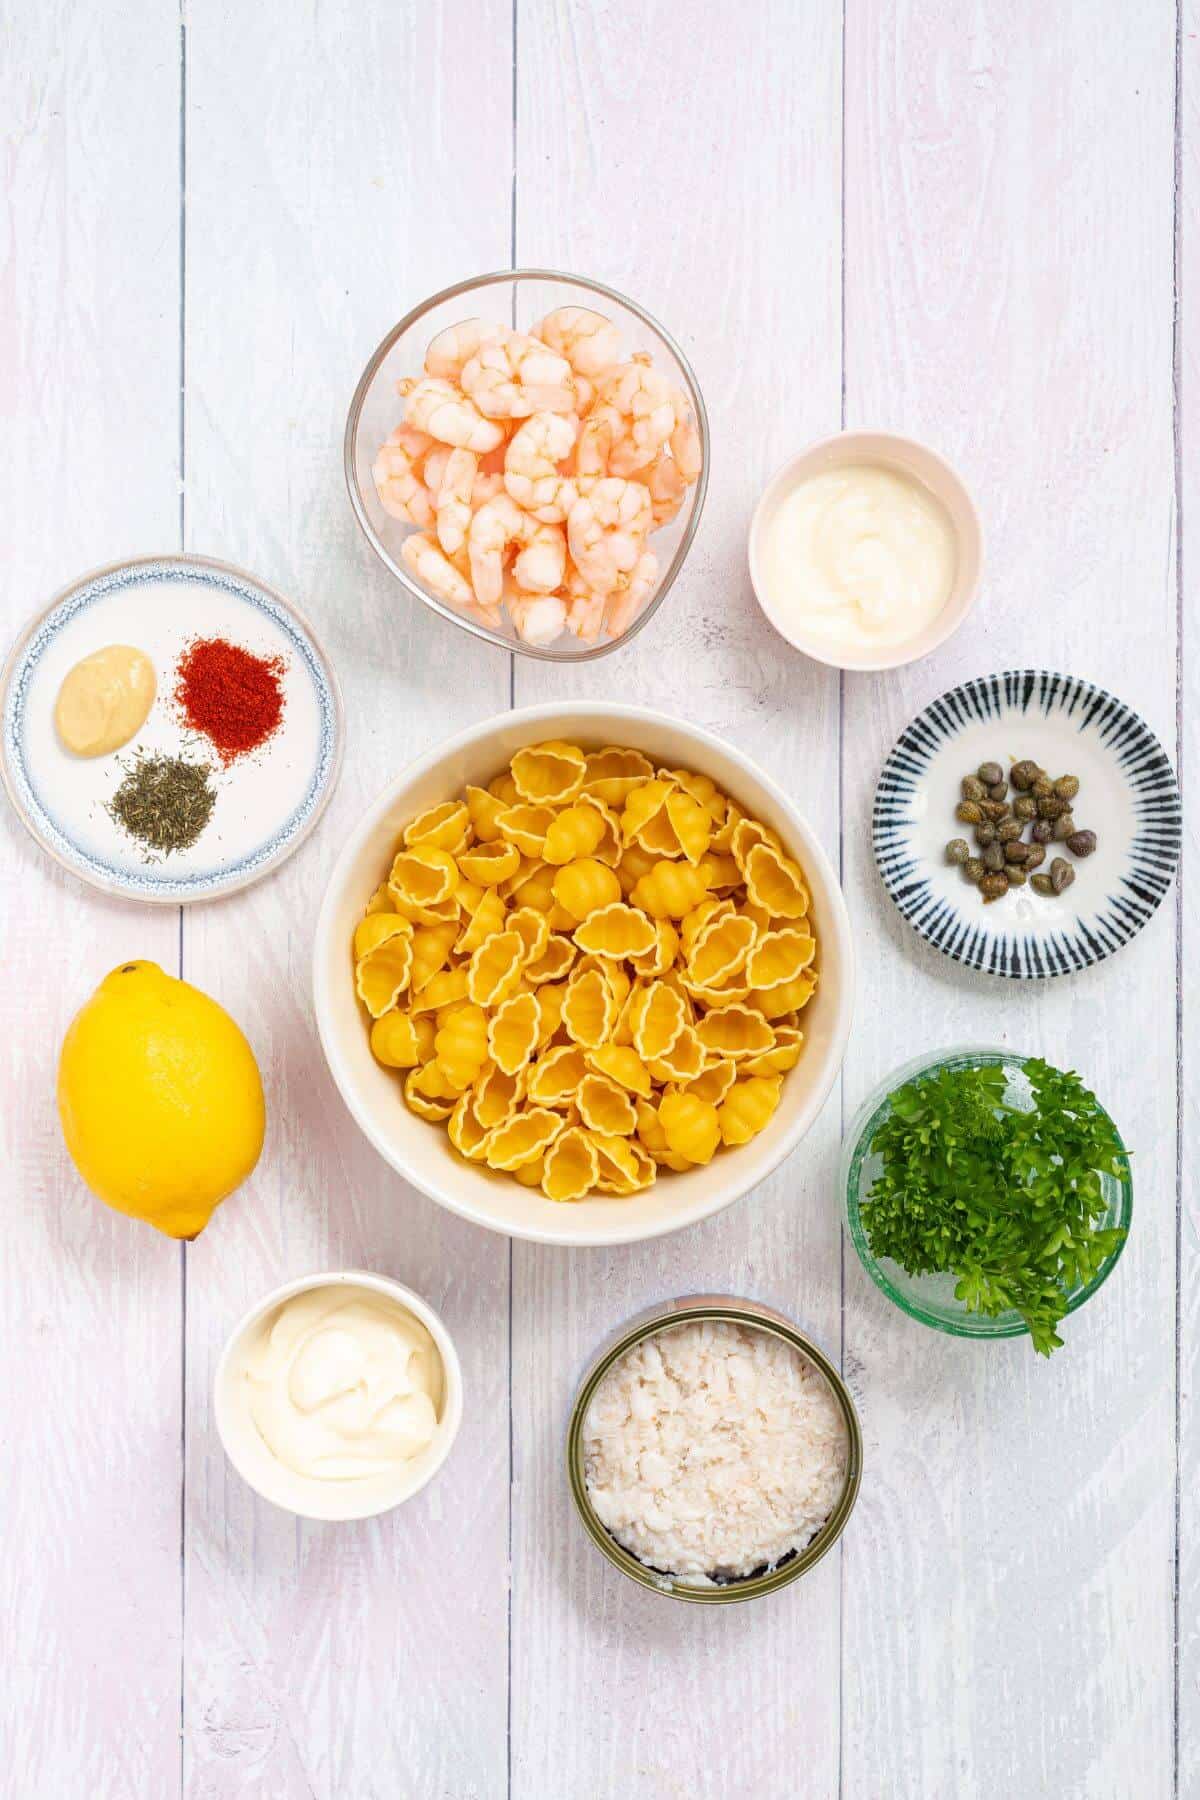 Seafood pasta salad recipe ingredients.